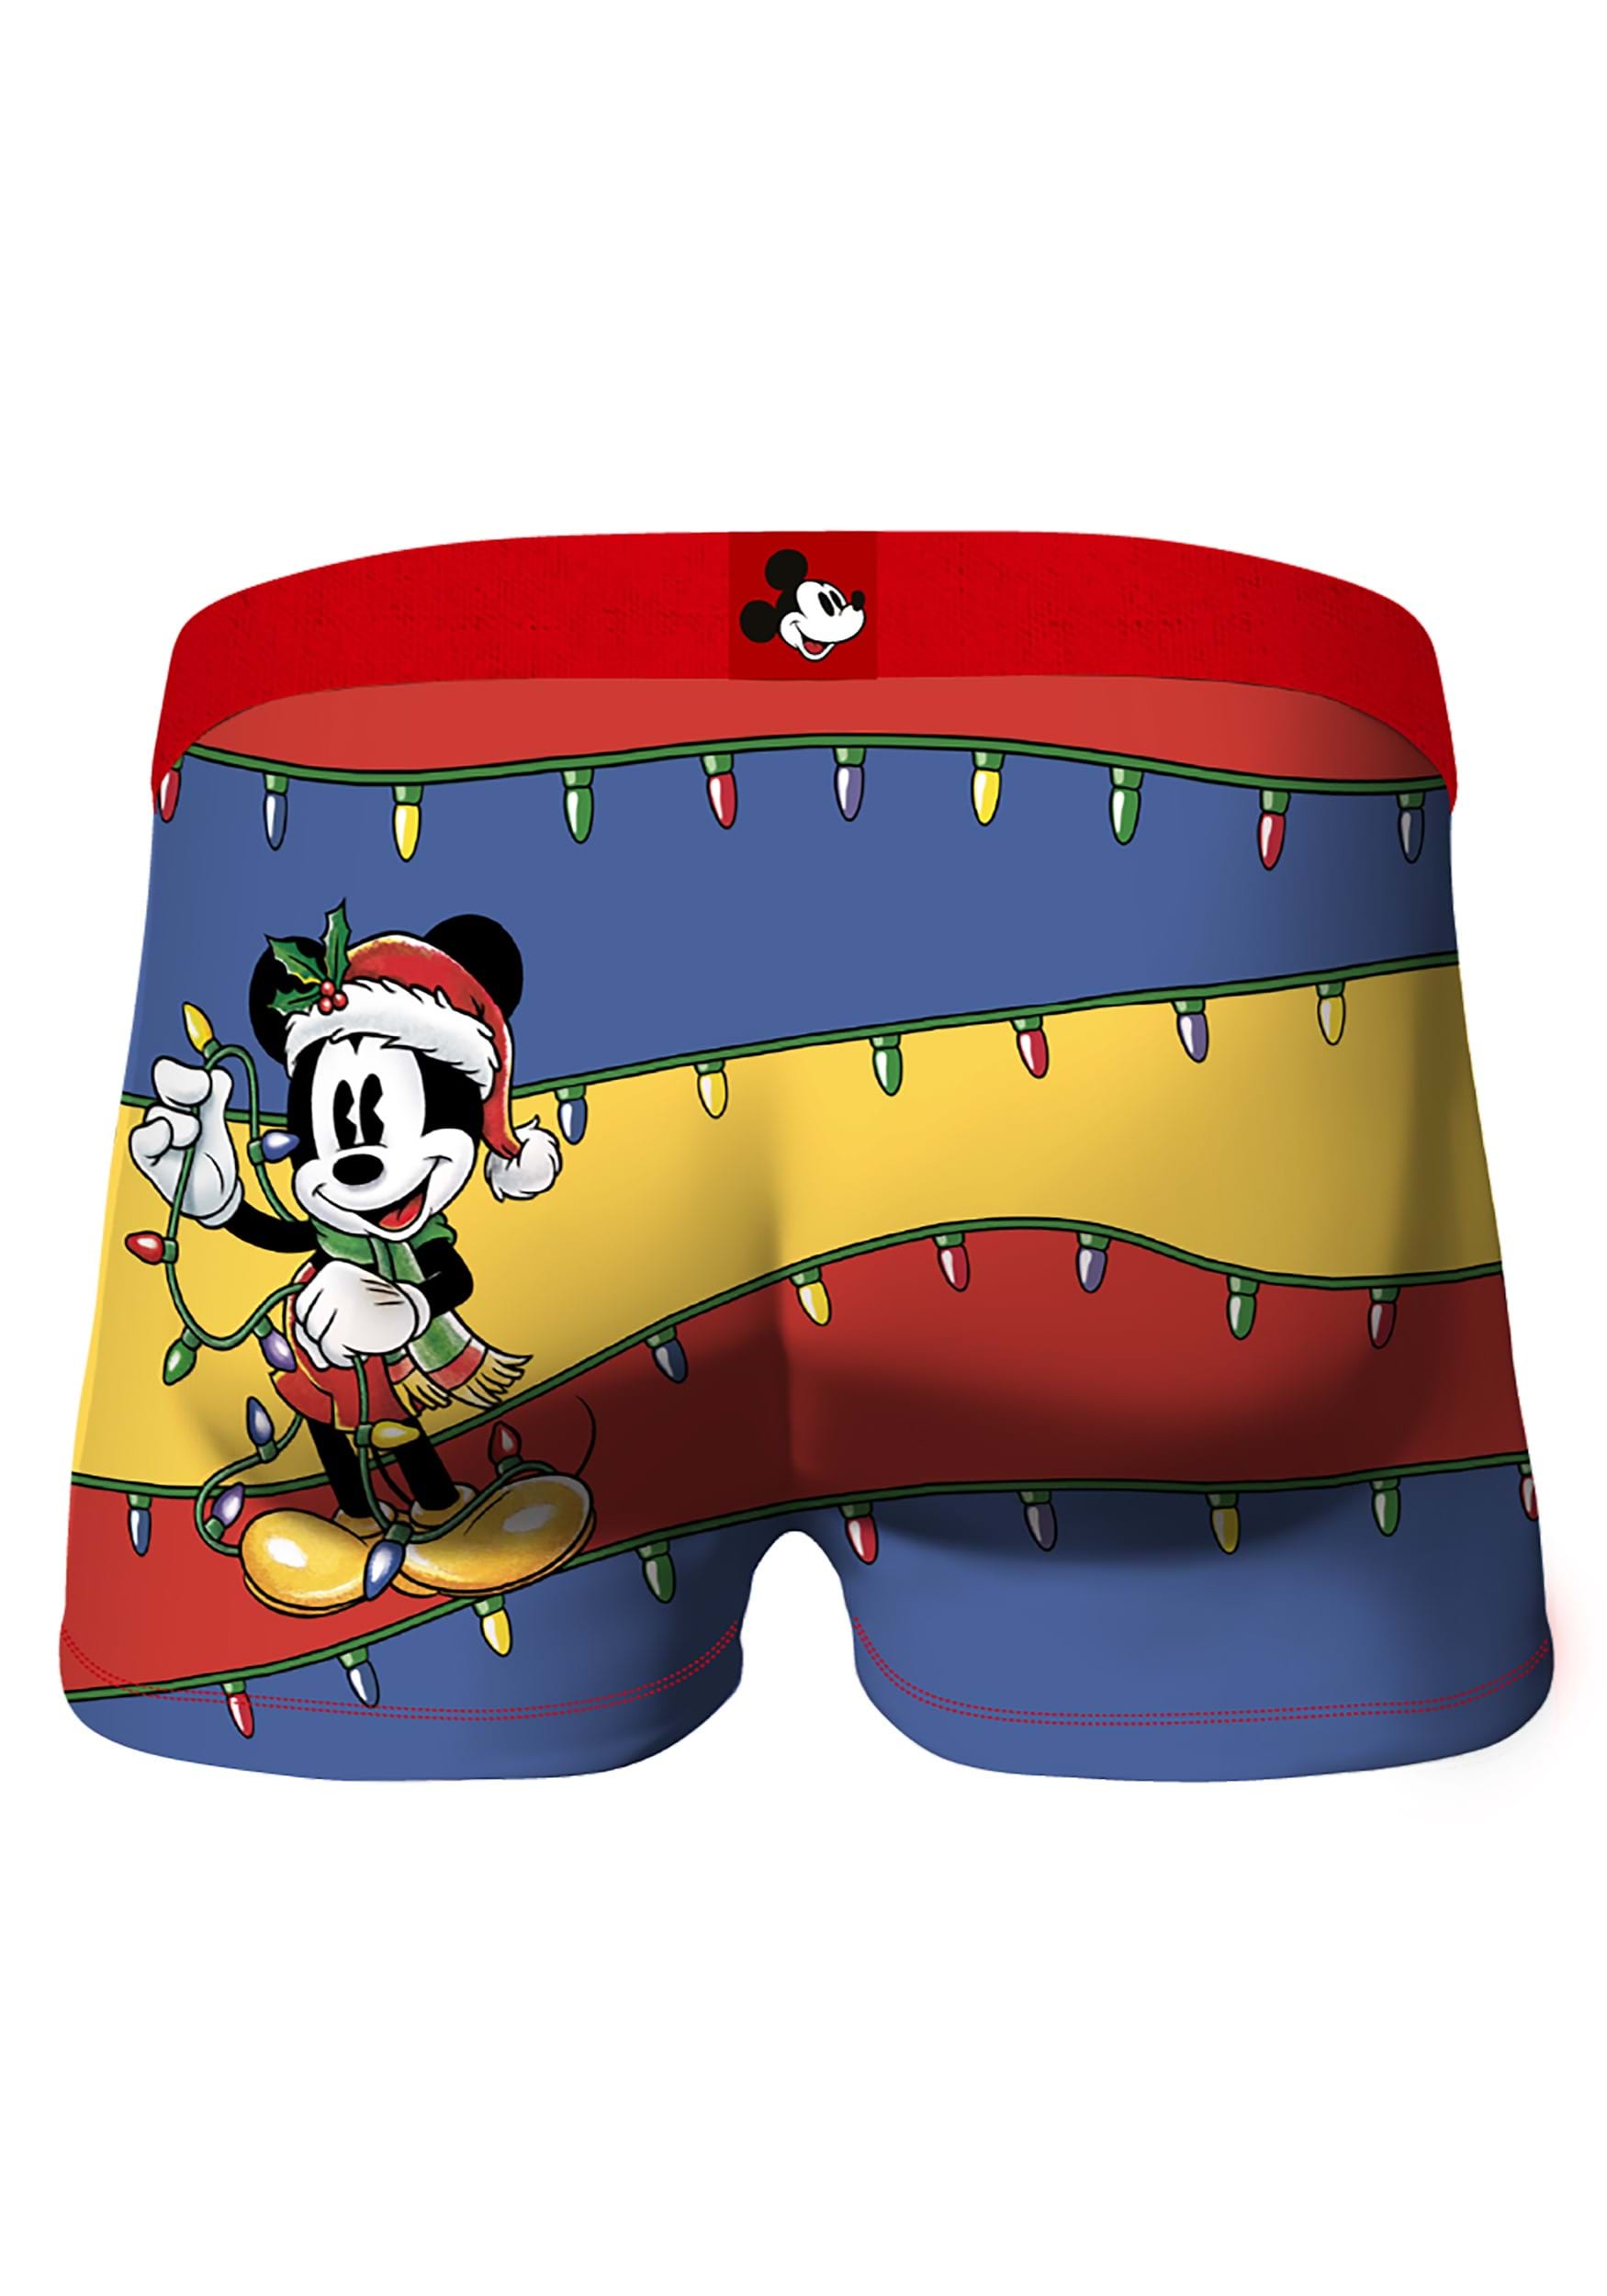 CRAZYBOXER Disney Mickey Mouse Men's Boxer Briefs, Mickeymouse